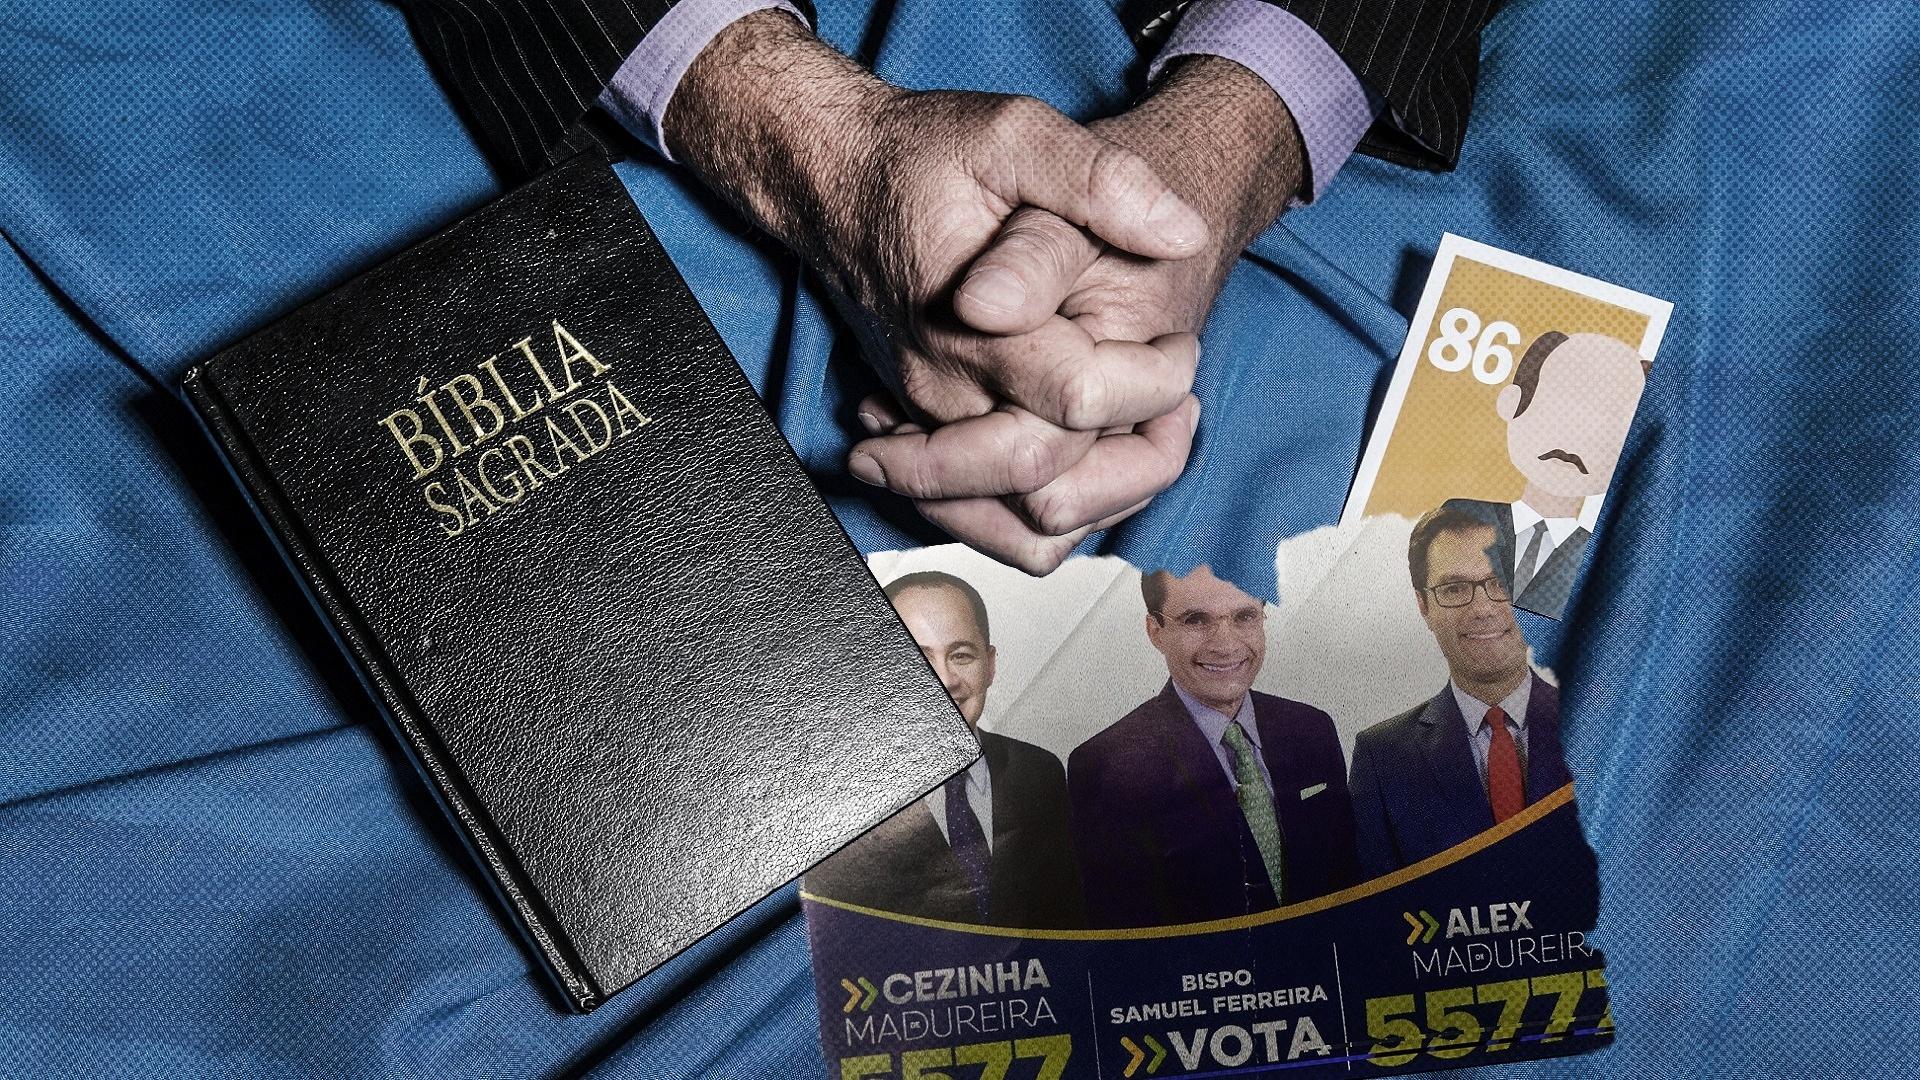 Culto vira comício e igreja faz até pesquisa eleitoral